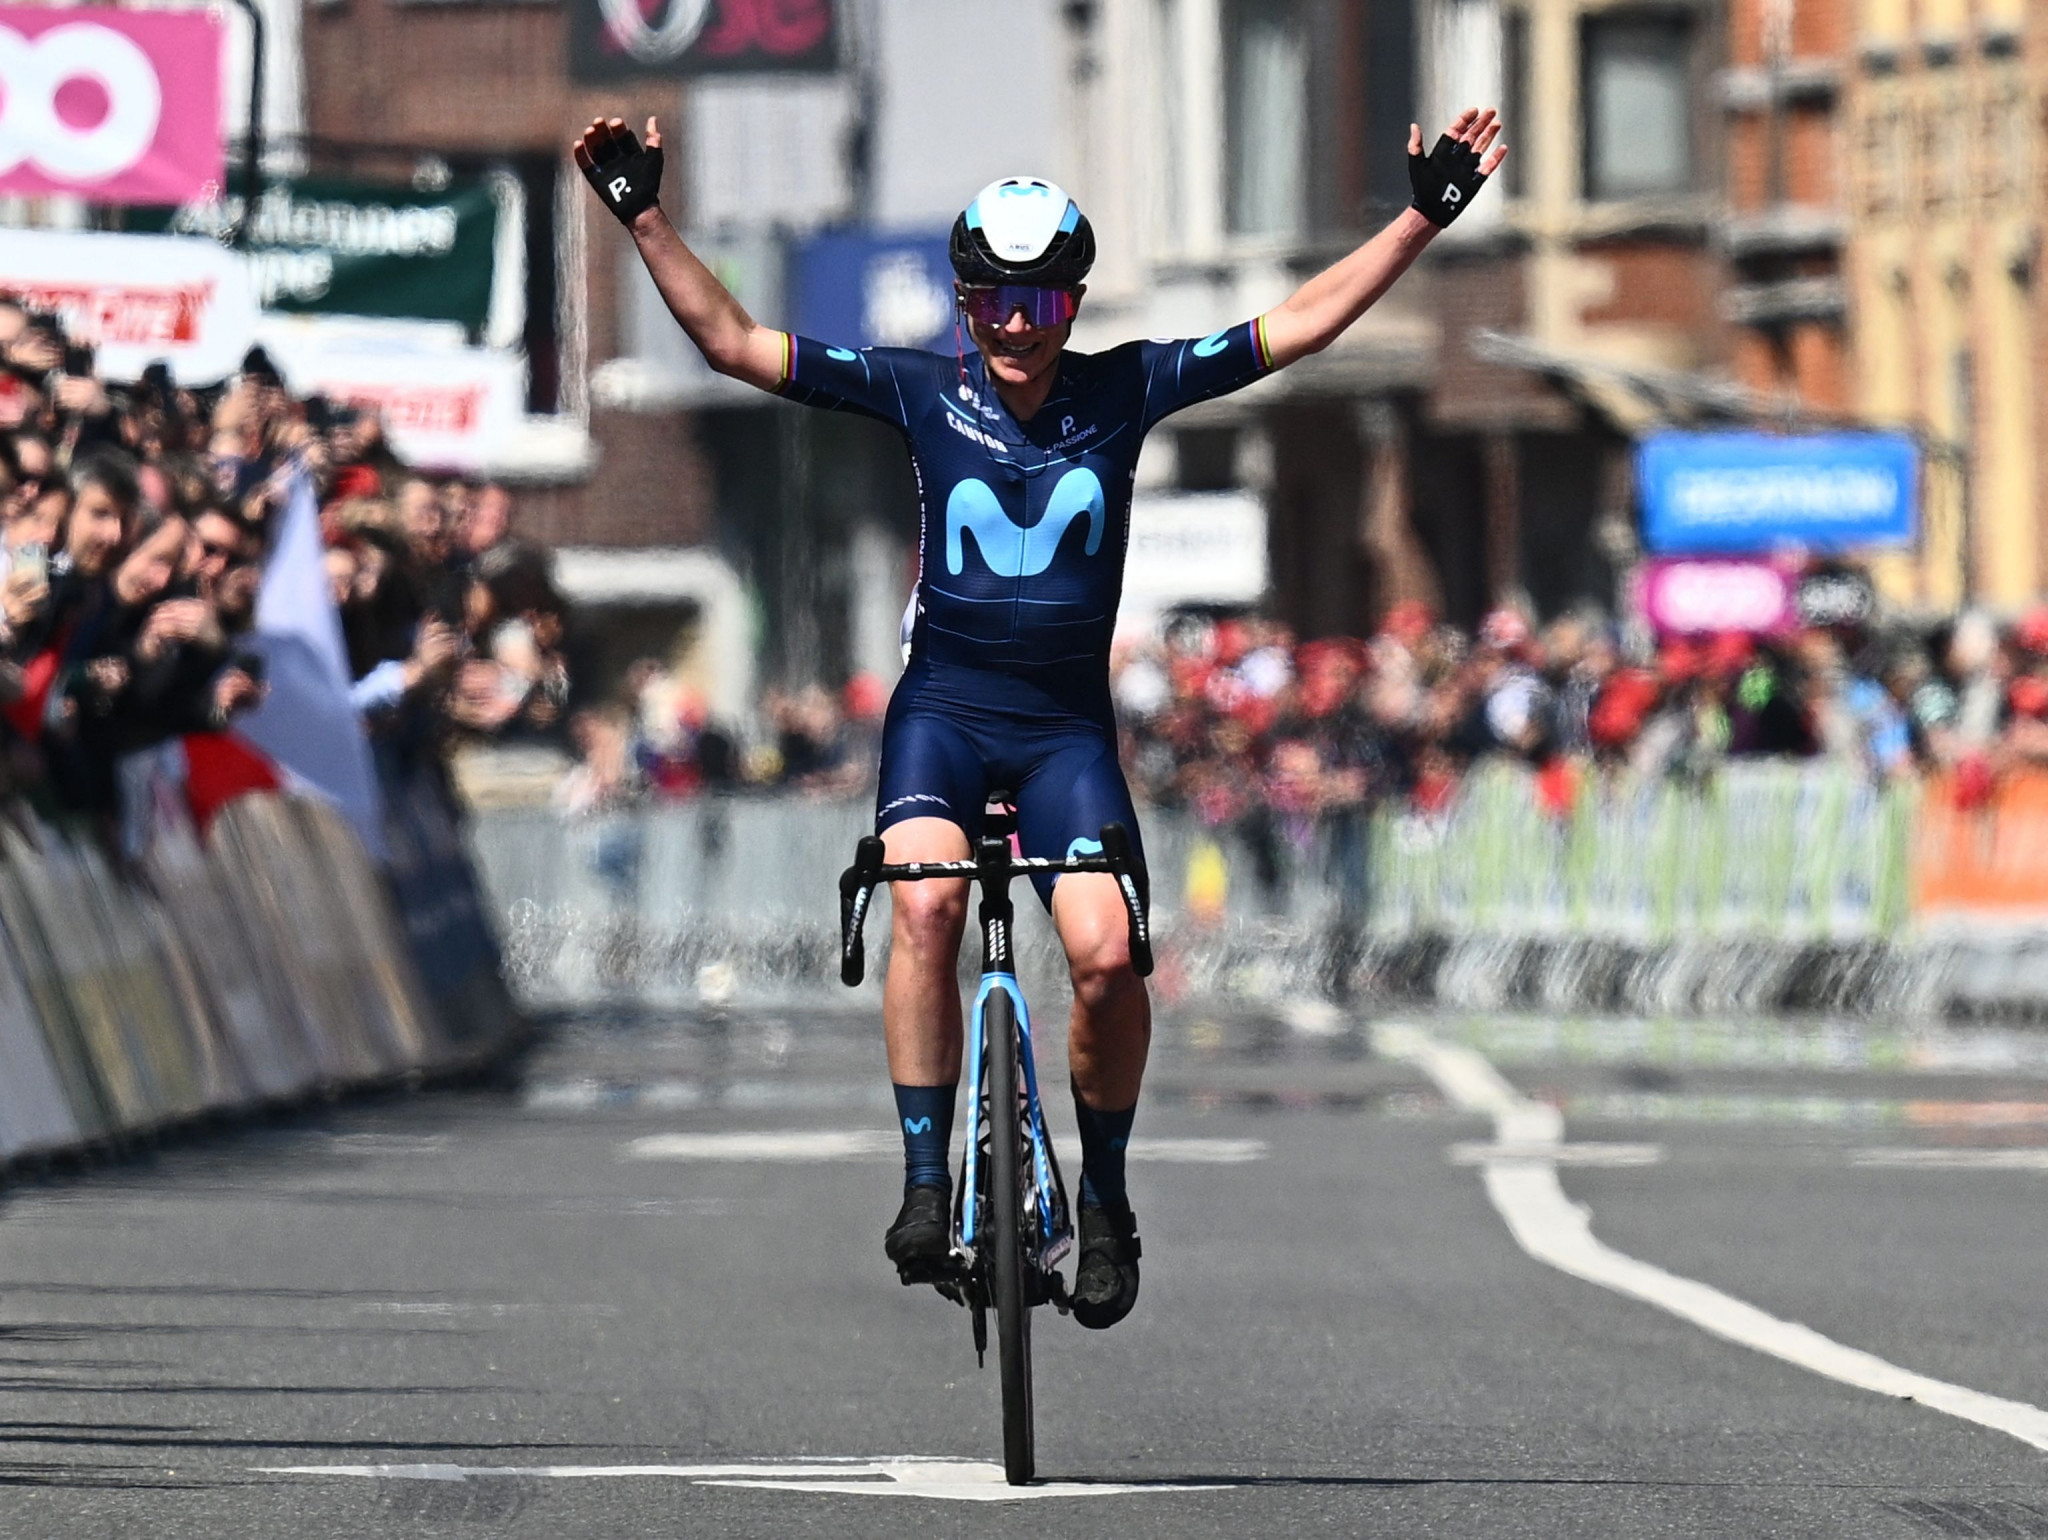 Movistar’s Van Vleuten starts as favourite in Giro d'Italia Donne